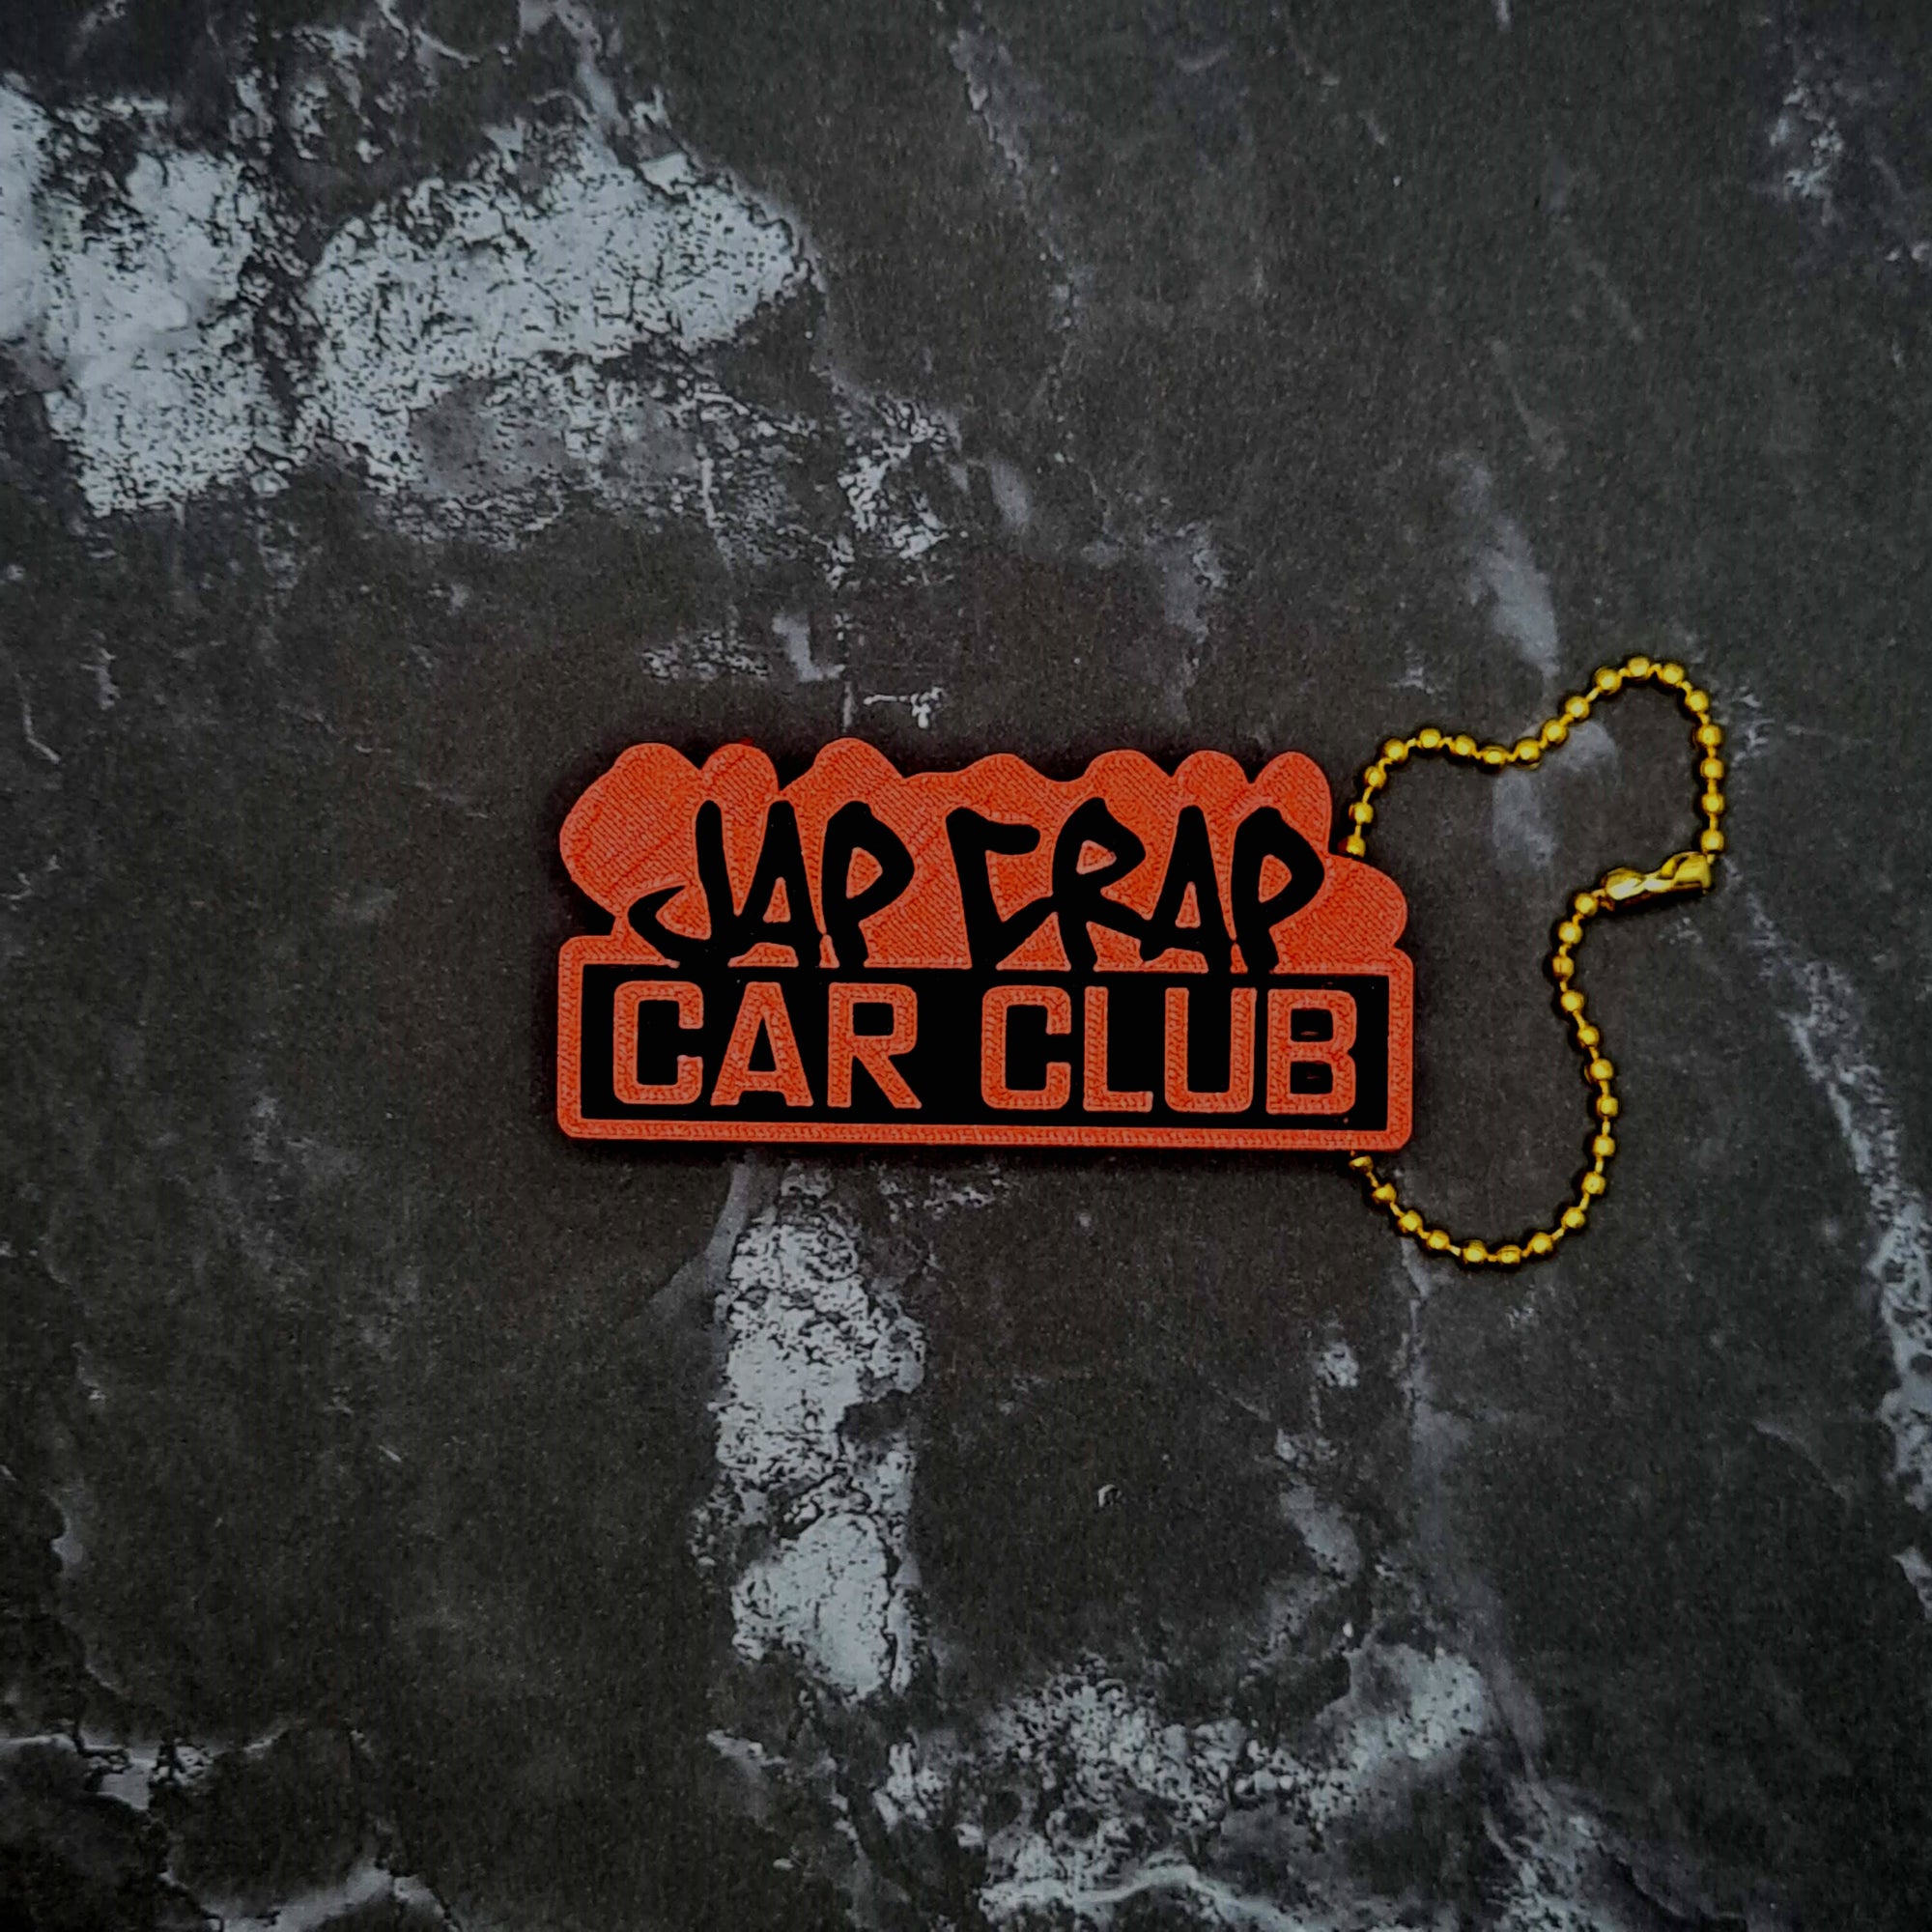 Jap Crap Car Club Keychain!